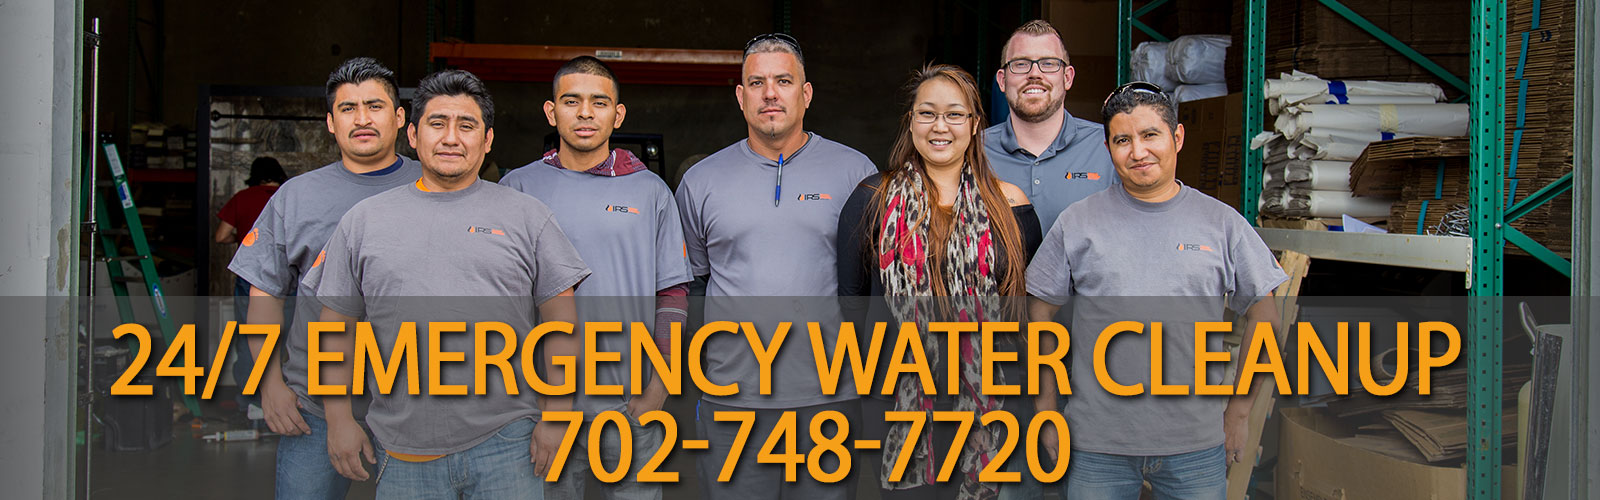 Las Vegas water damage repair service